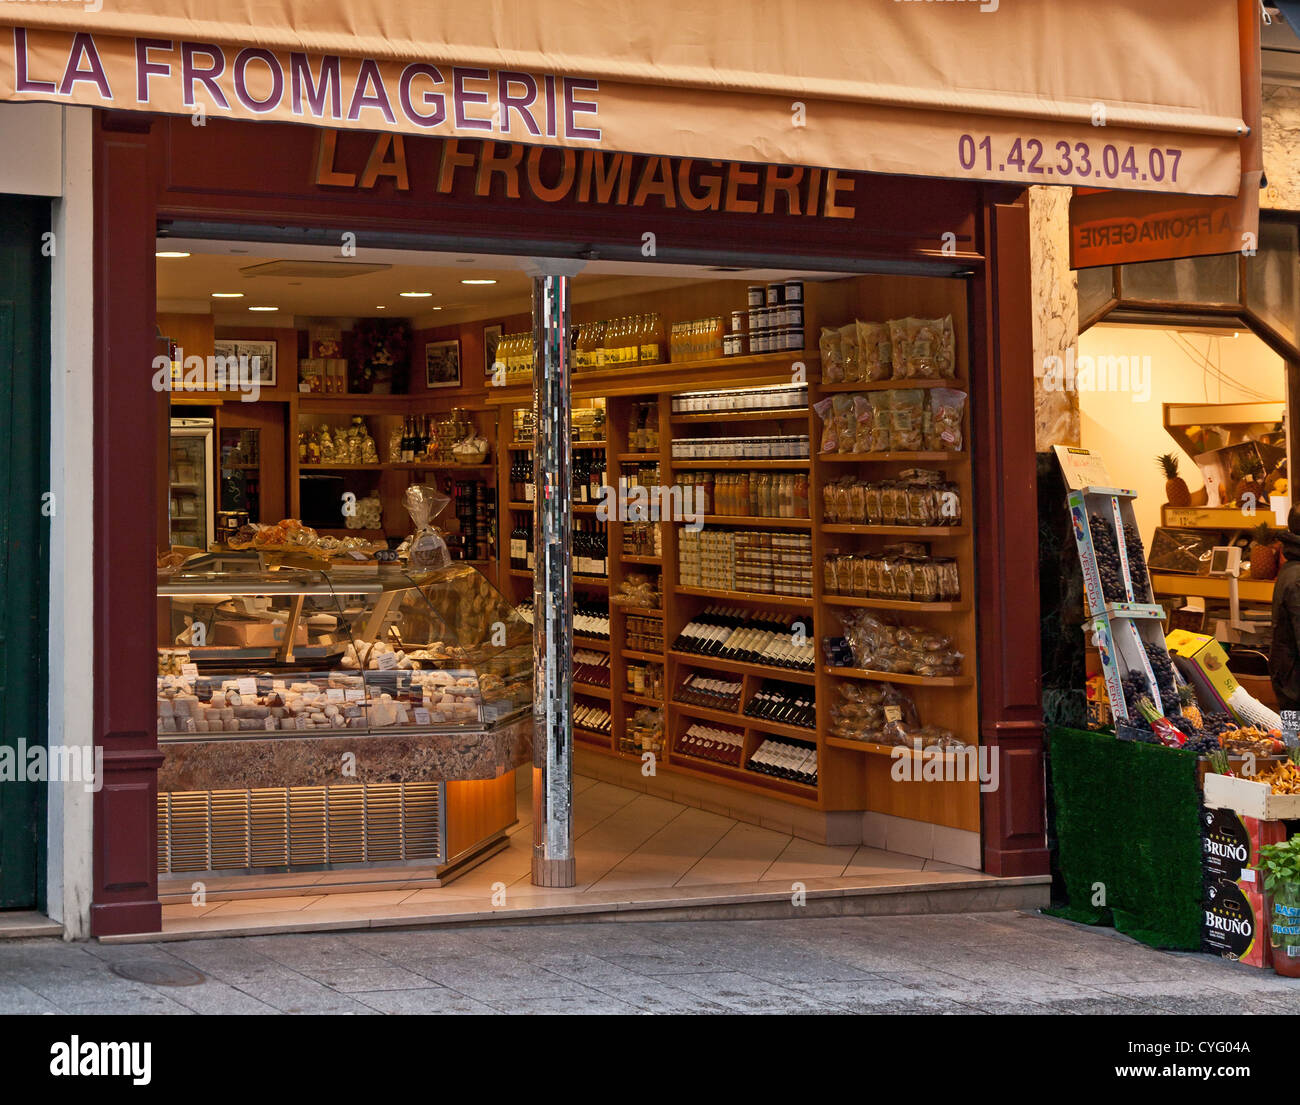 La Fromagerie, Spezialist für Käse, Wein und Delikatessen-Shop in ...